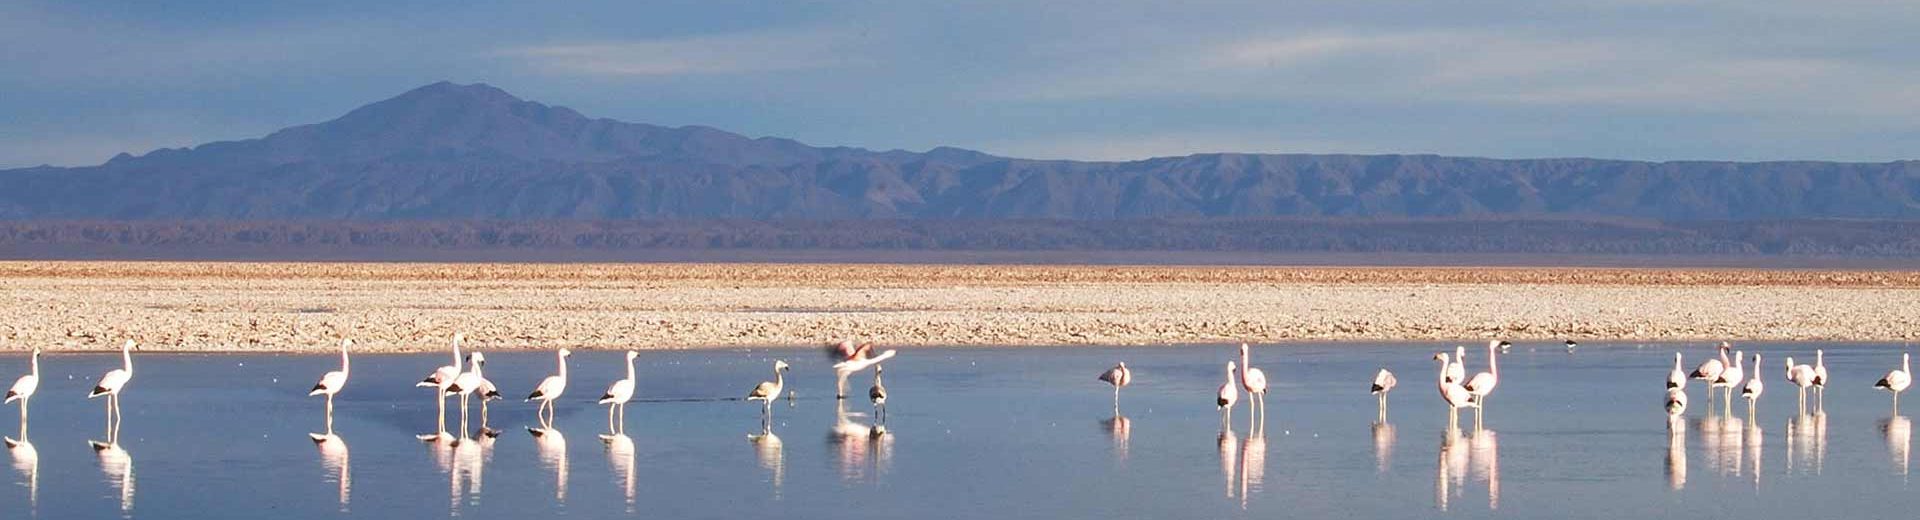 Deserto de Atacama: Um lugar fantástico para descobrir